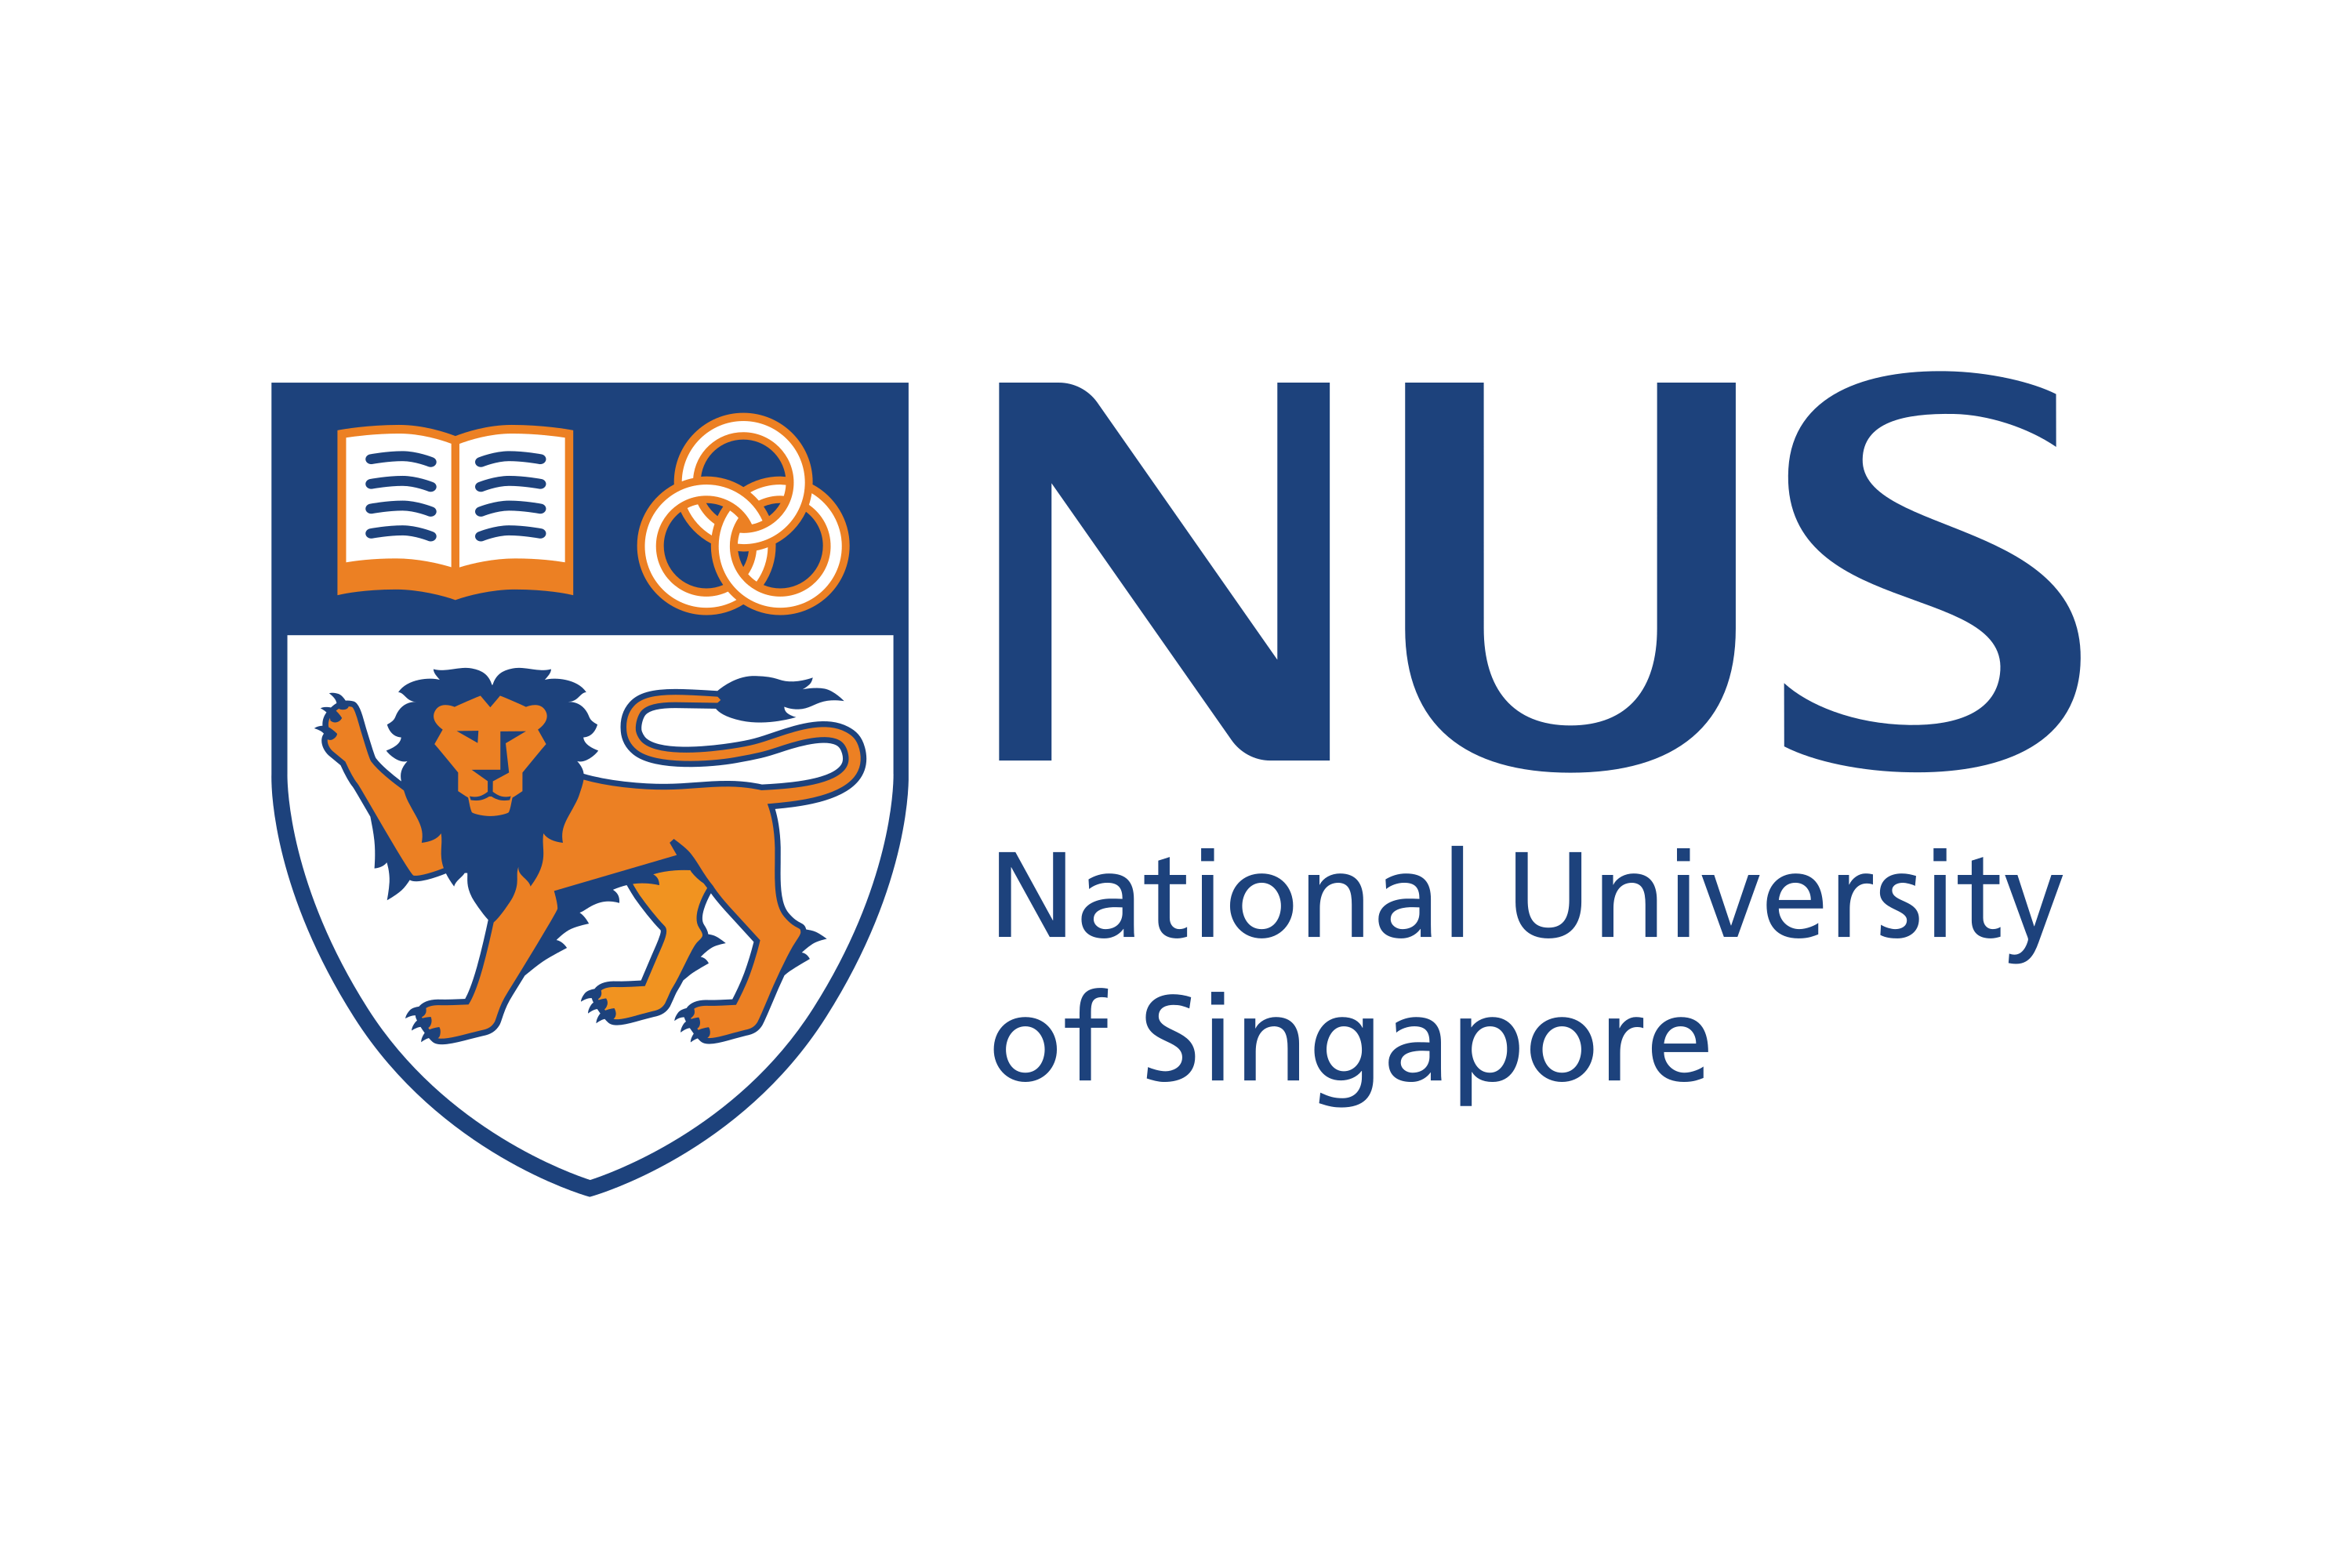 Laden Sie das Logo der National University of Singapore (NUS) als SVG-Vektor herunter oder ...